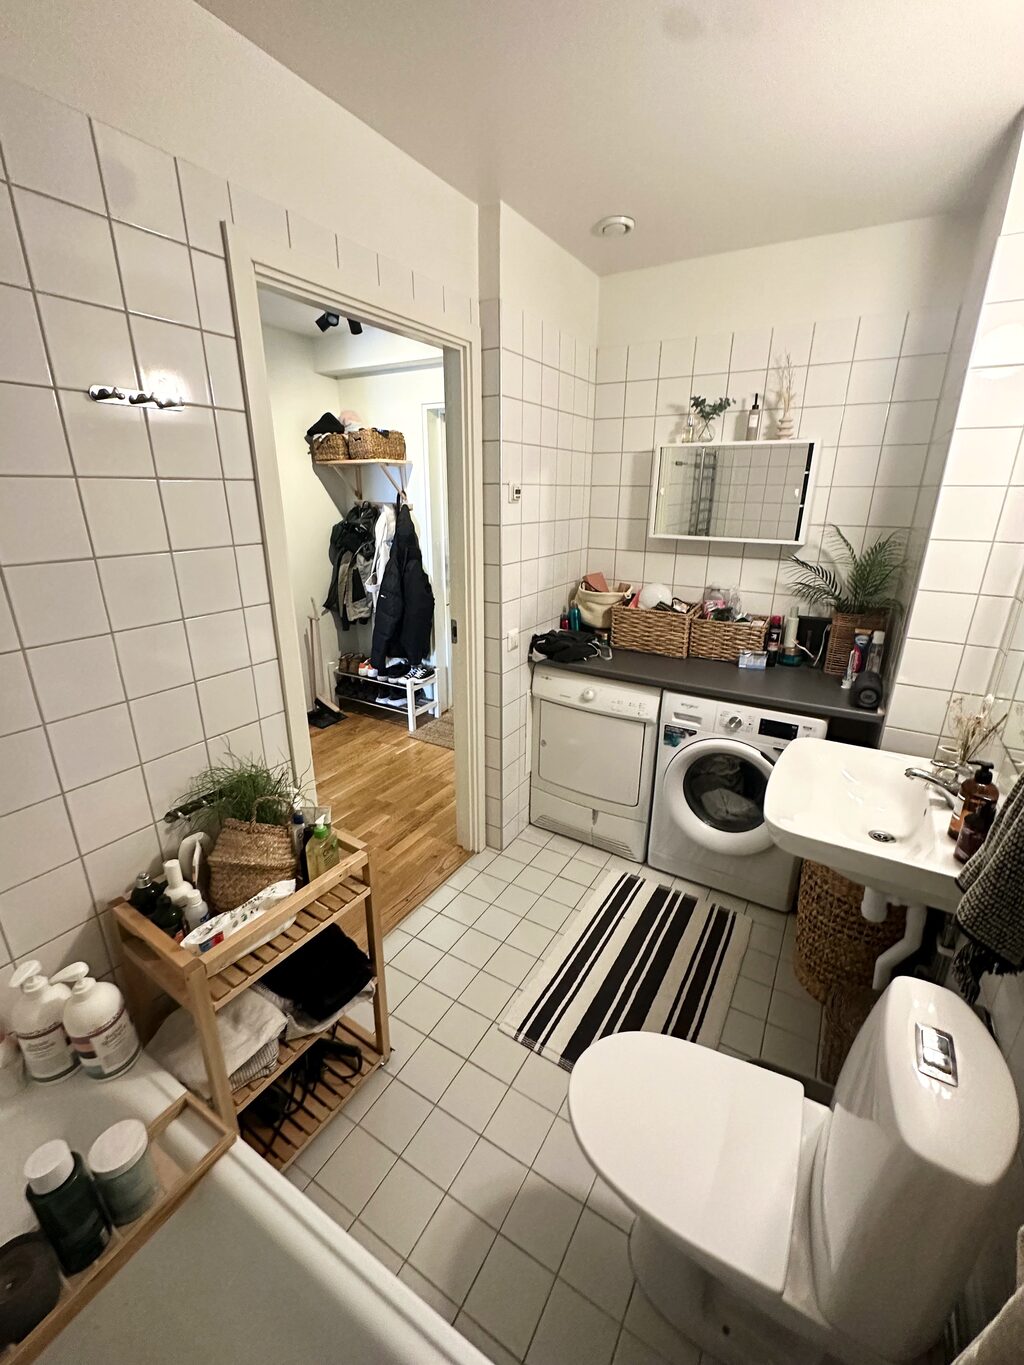 Lägenhetsbyte - Sjöviksbacken 41, 117 56 Stockholm